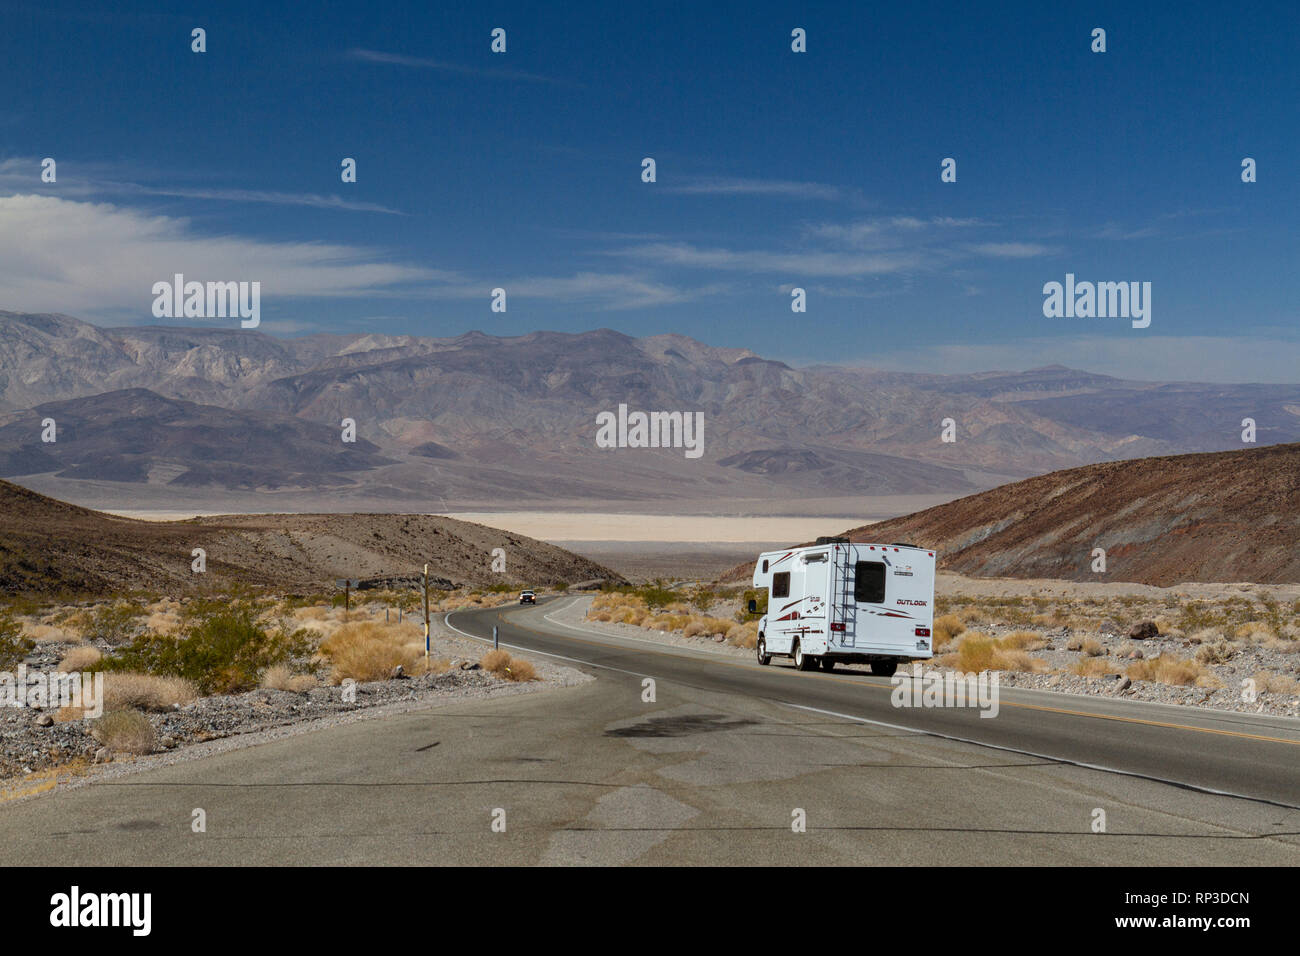 Le camping-car sur la California State Route 190 en direction de Panamint Springs, Death Valley National Park, California, United States. Banque D'Images